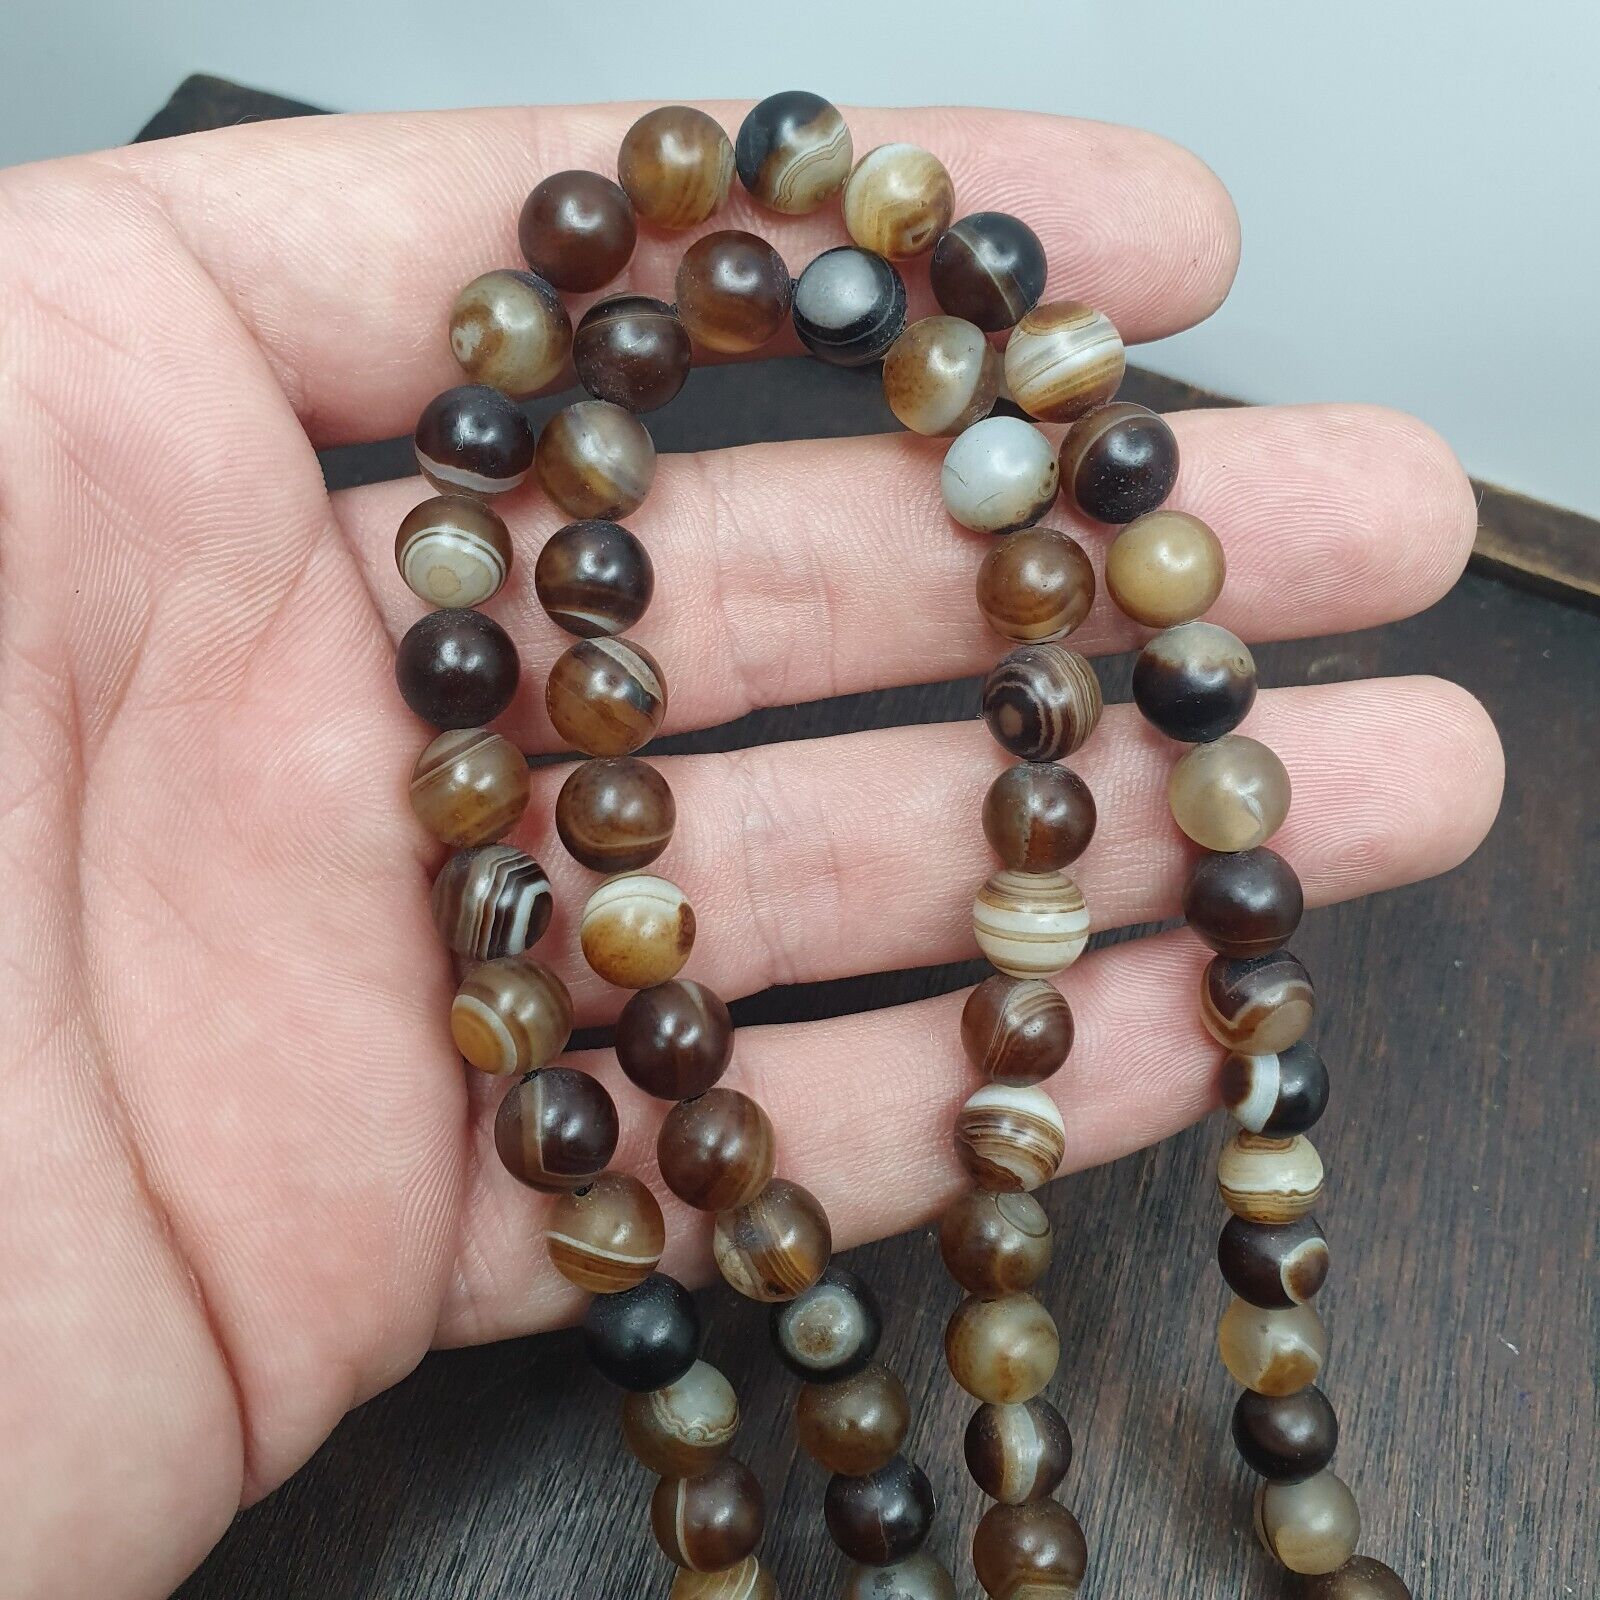 108(+) Prayer Beads Agate Stone , Tibetan Buddhist Rosary Buddha Beads.